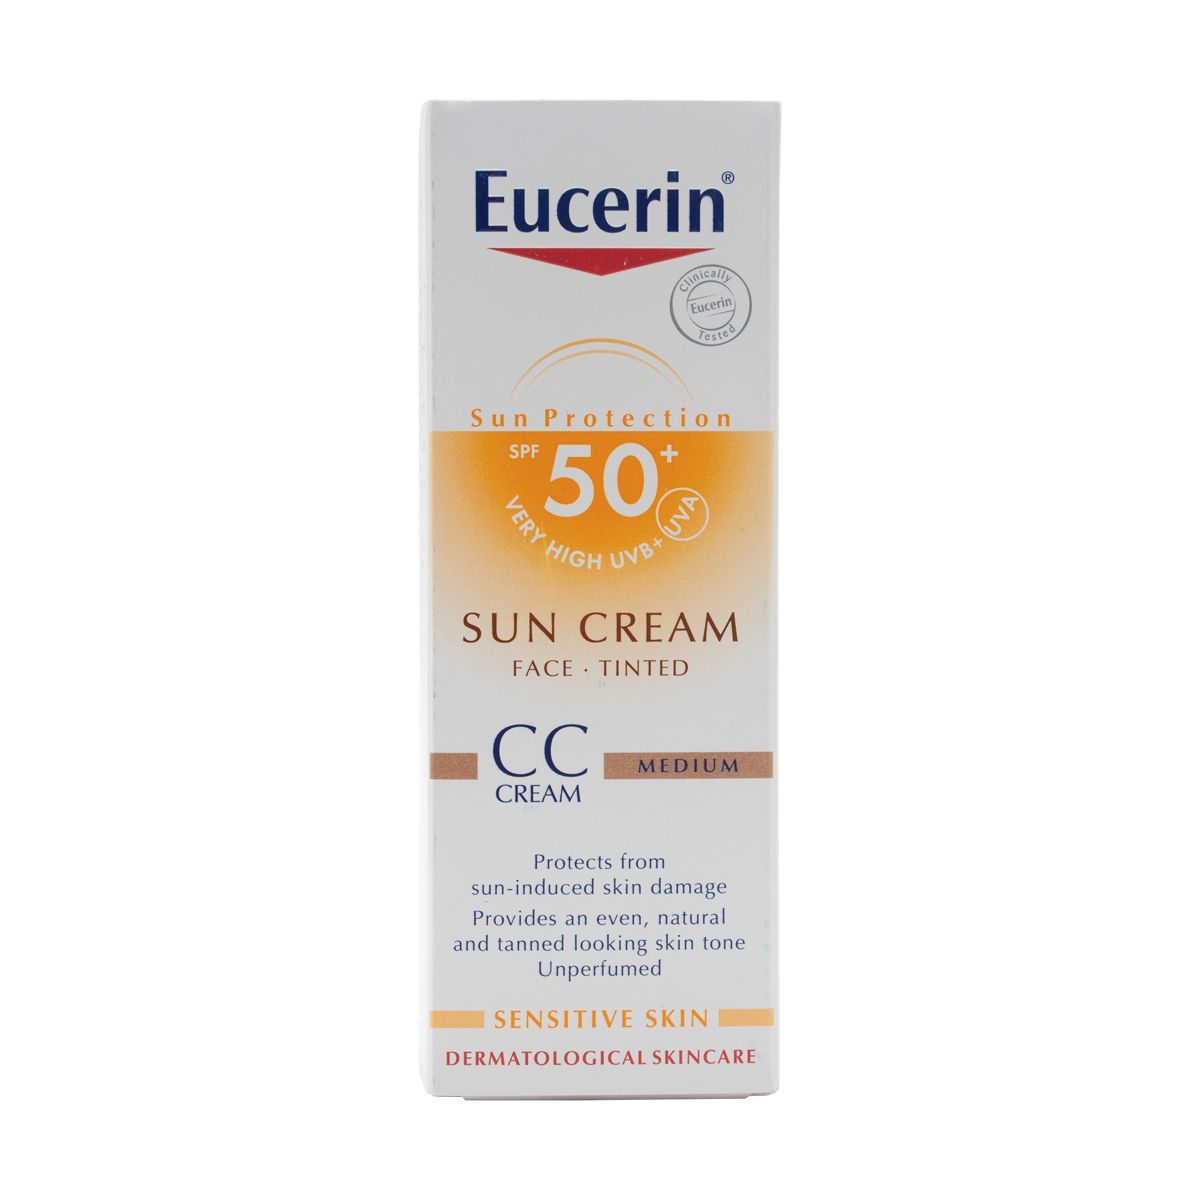 Sun Cream Tinted Cc Medium SPF50+